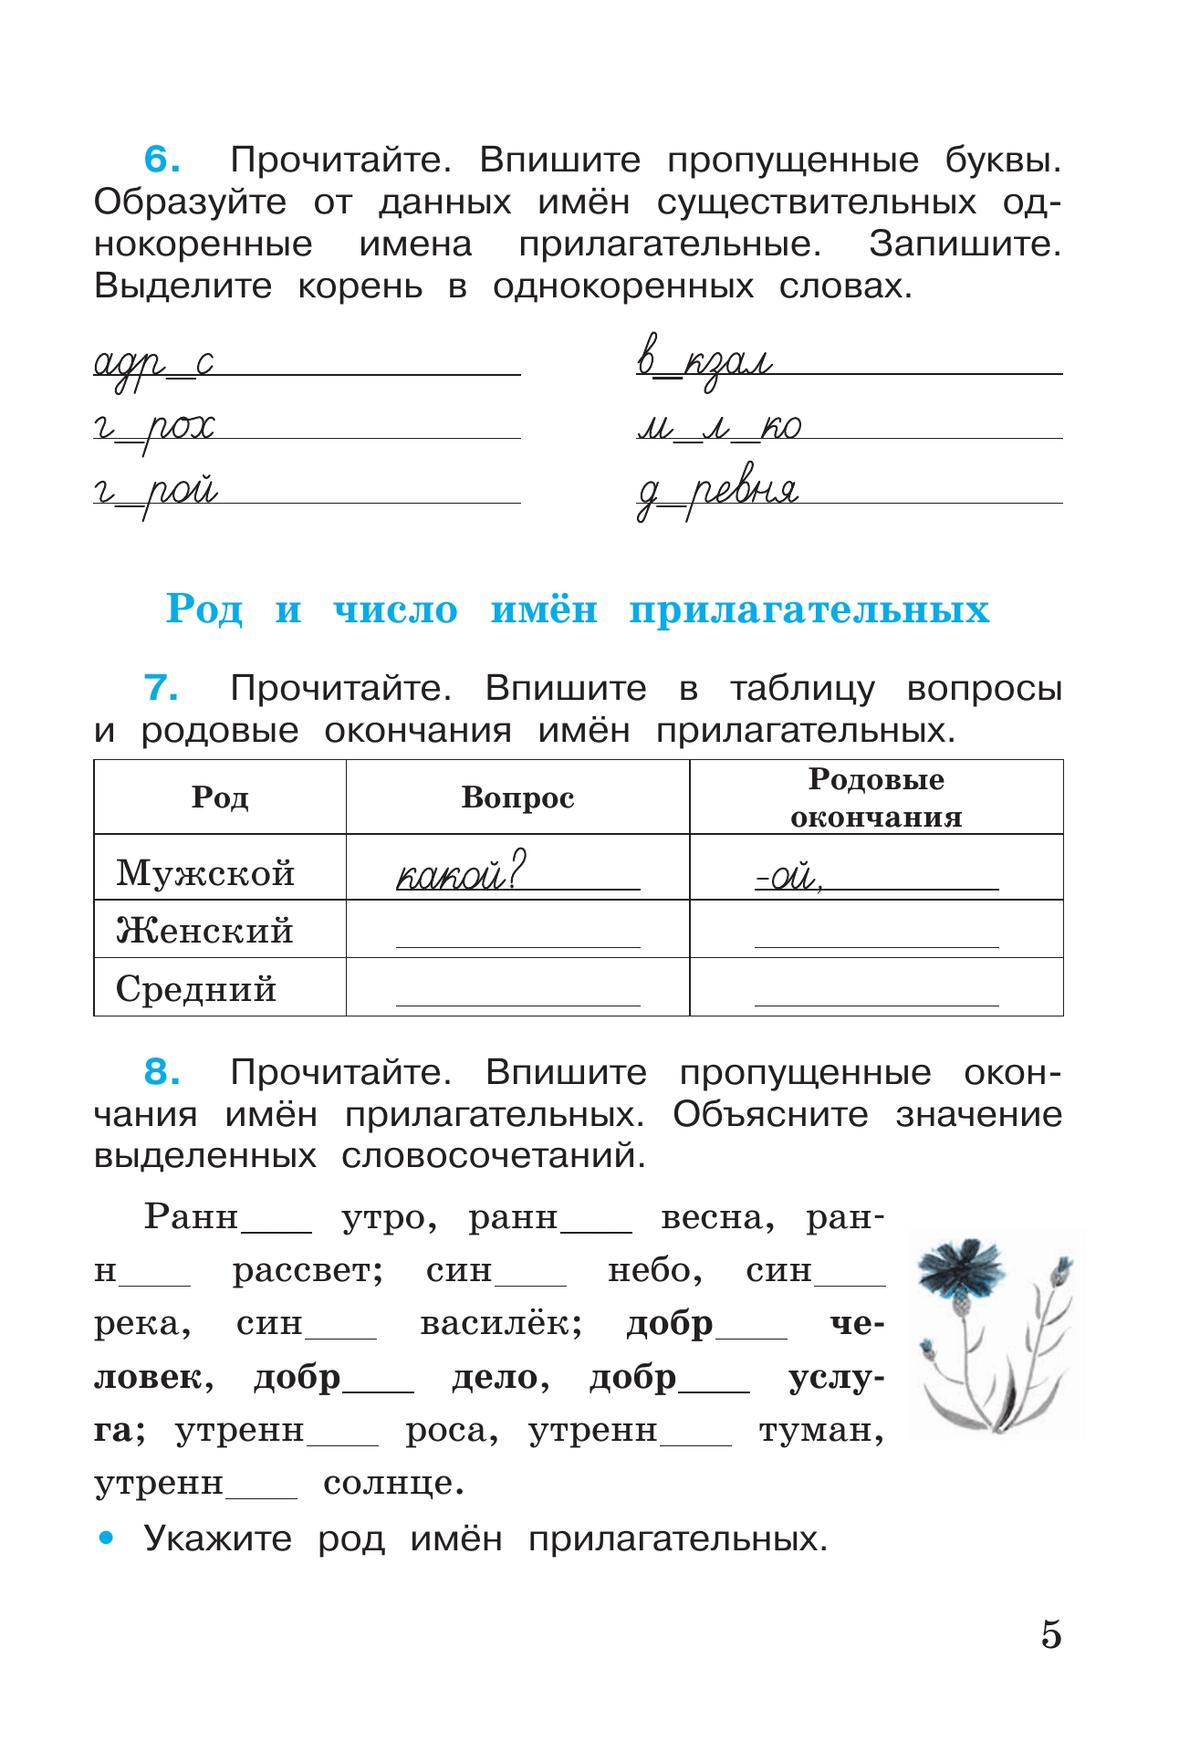 Русский язык. Рабочая тетрадь. 4 класс. В 2-х ч. Ч. 2 7